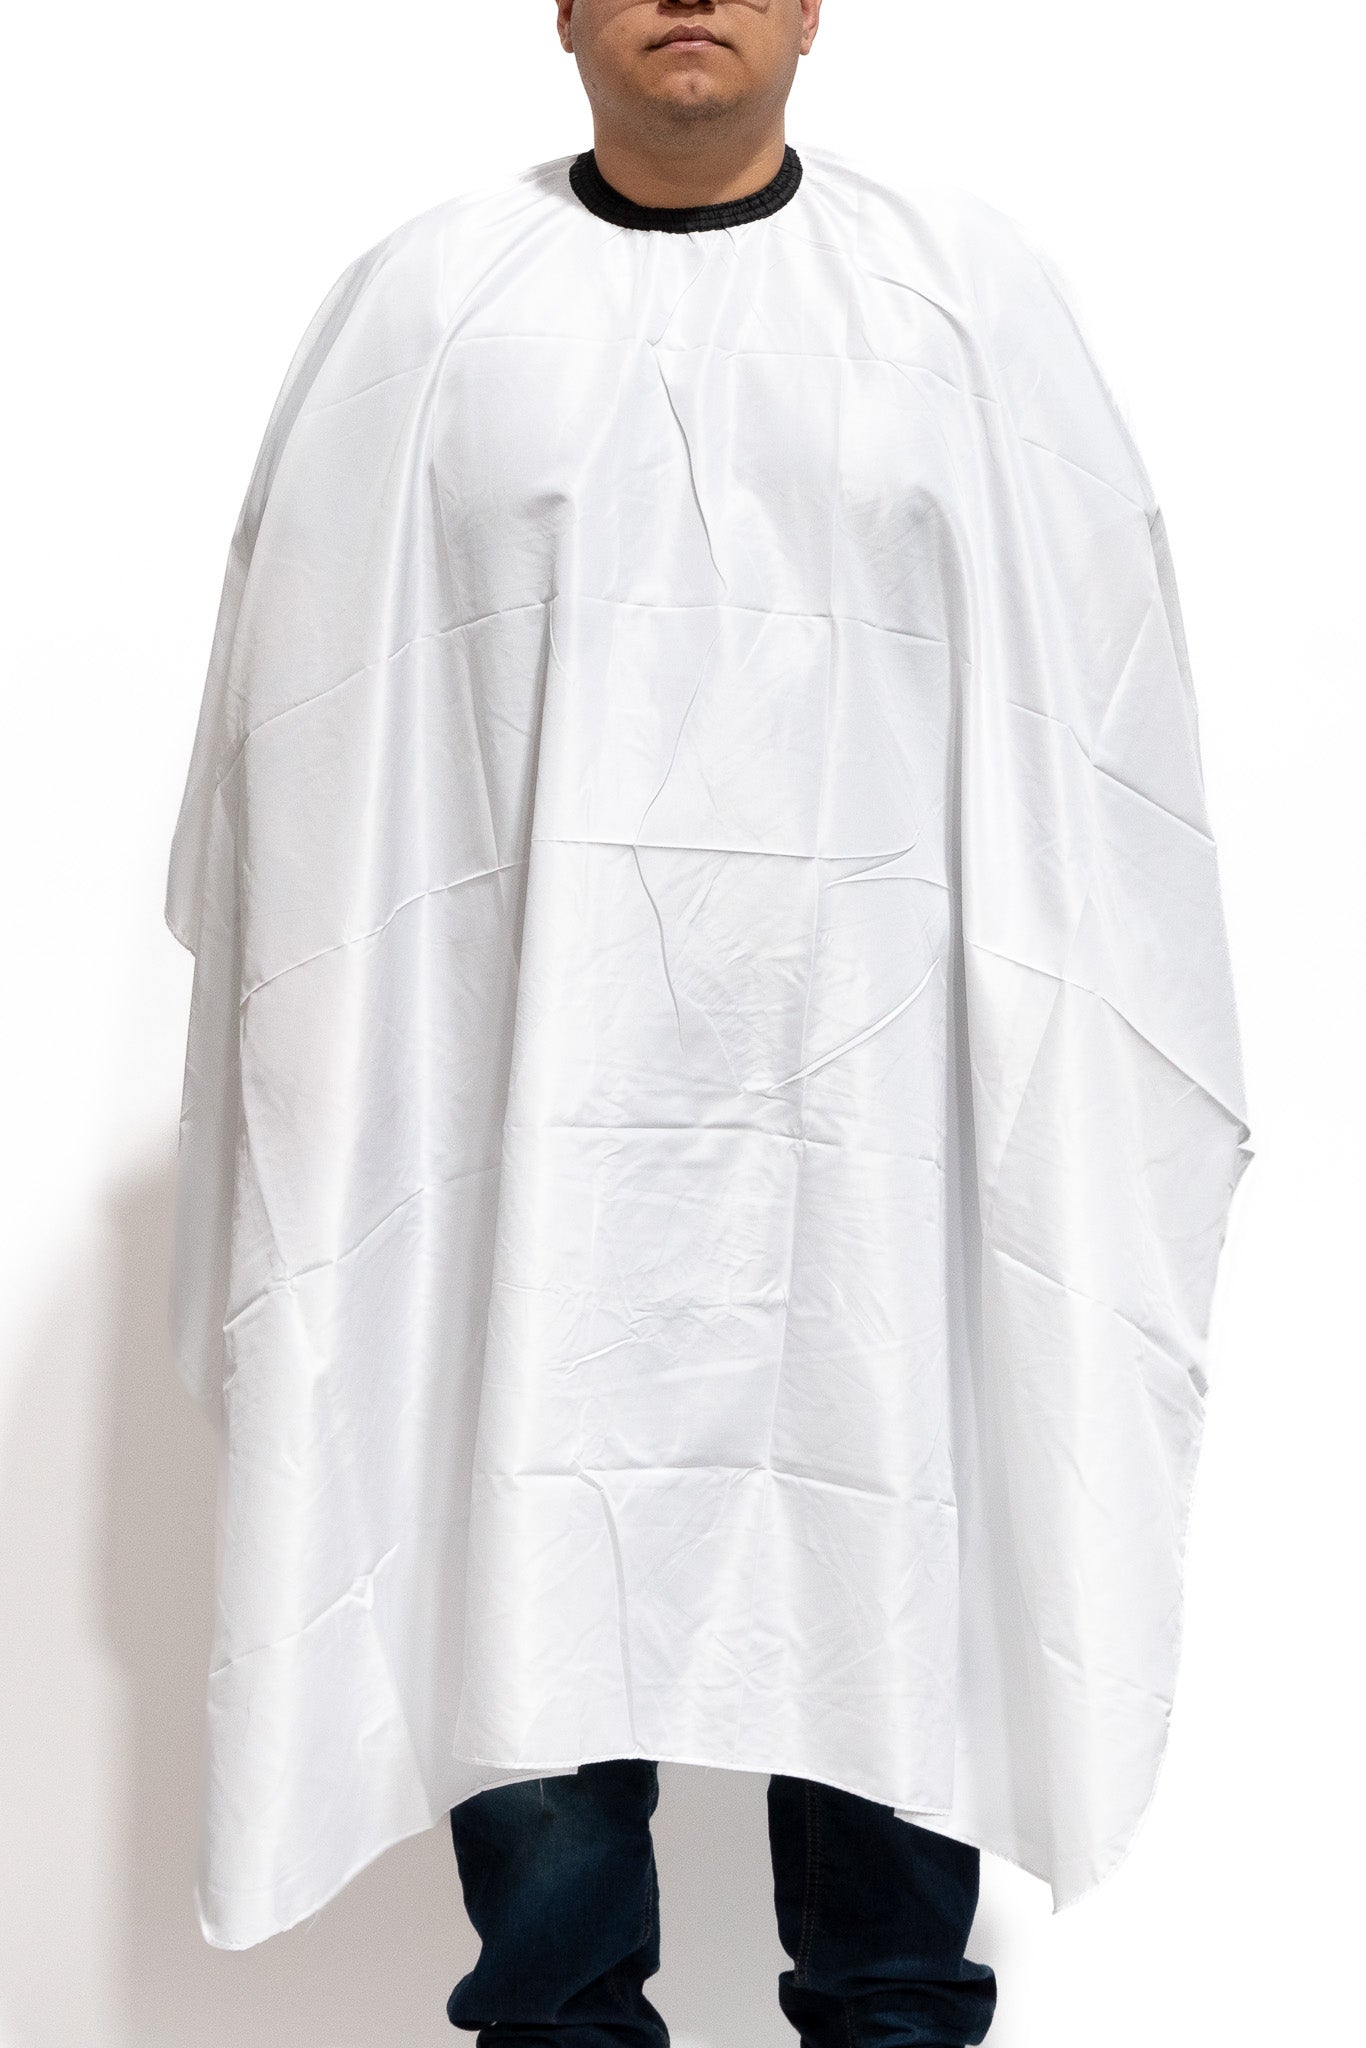 Chair Cloth, Blank, White